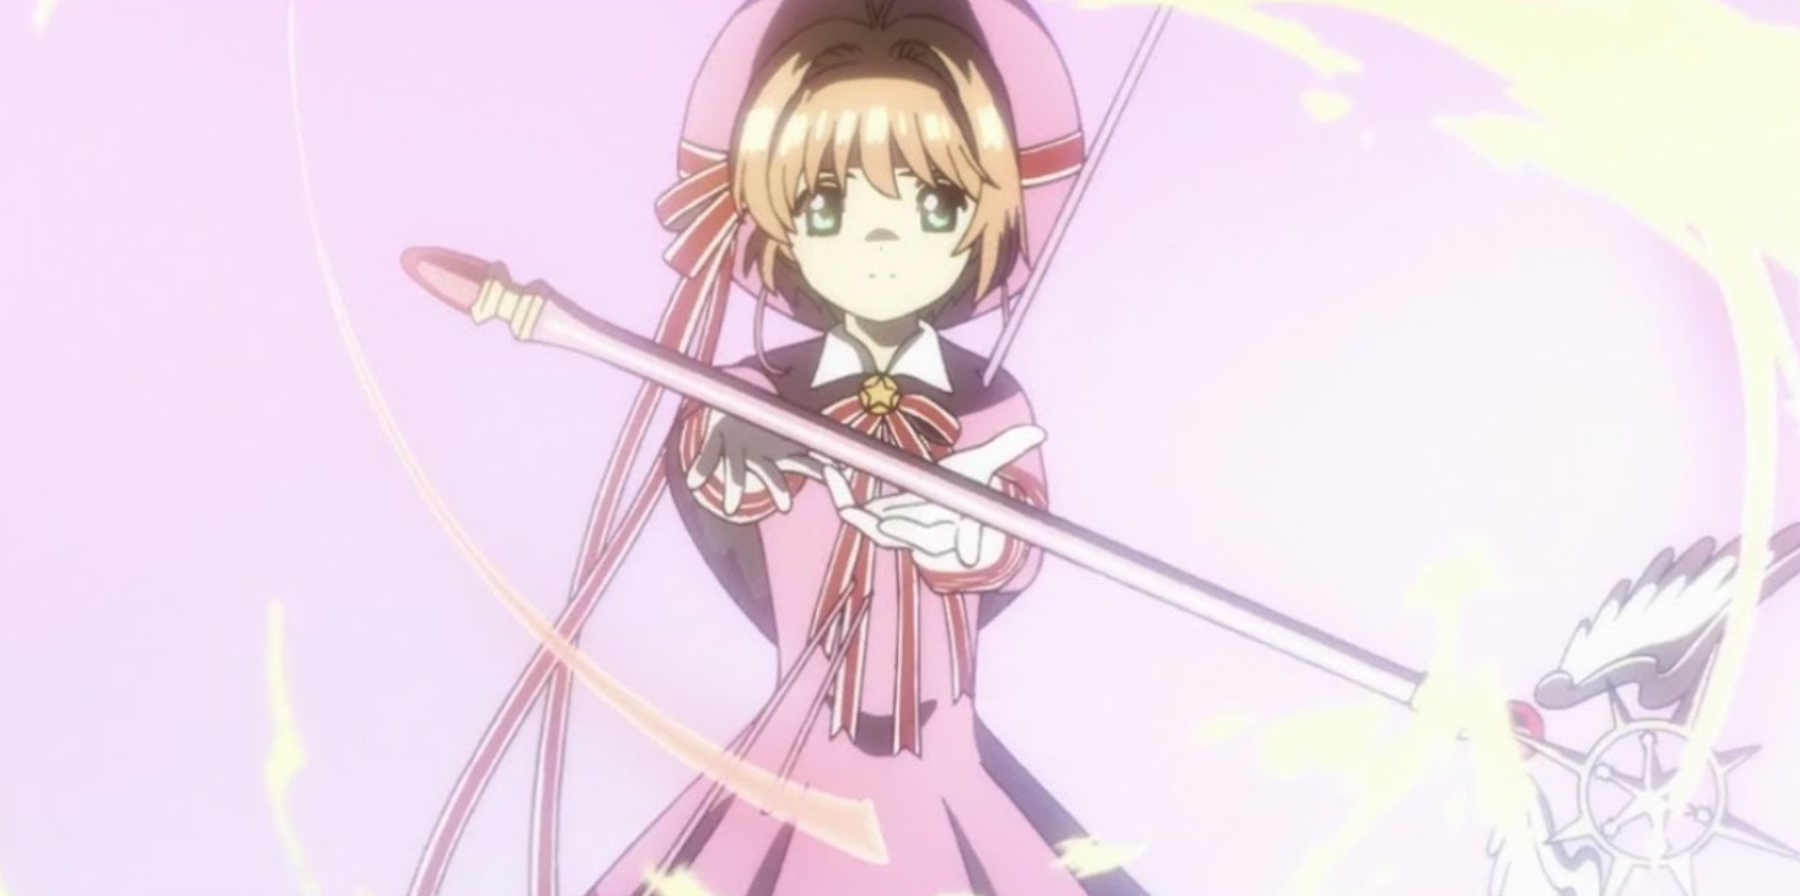 Sakura Kinomoto uses her wand